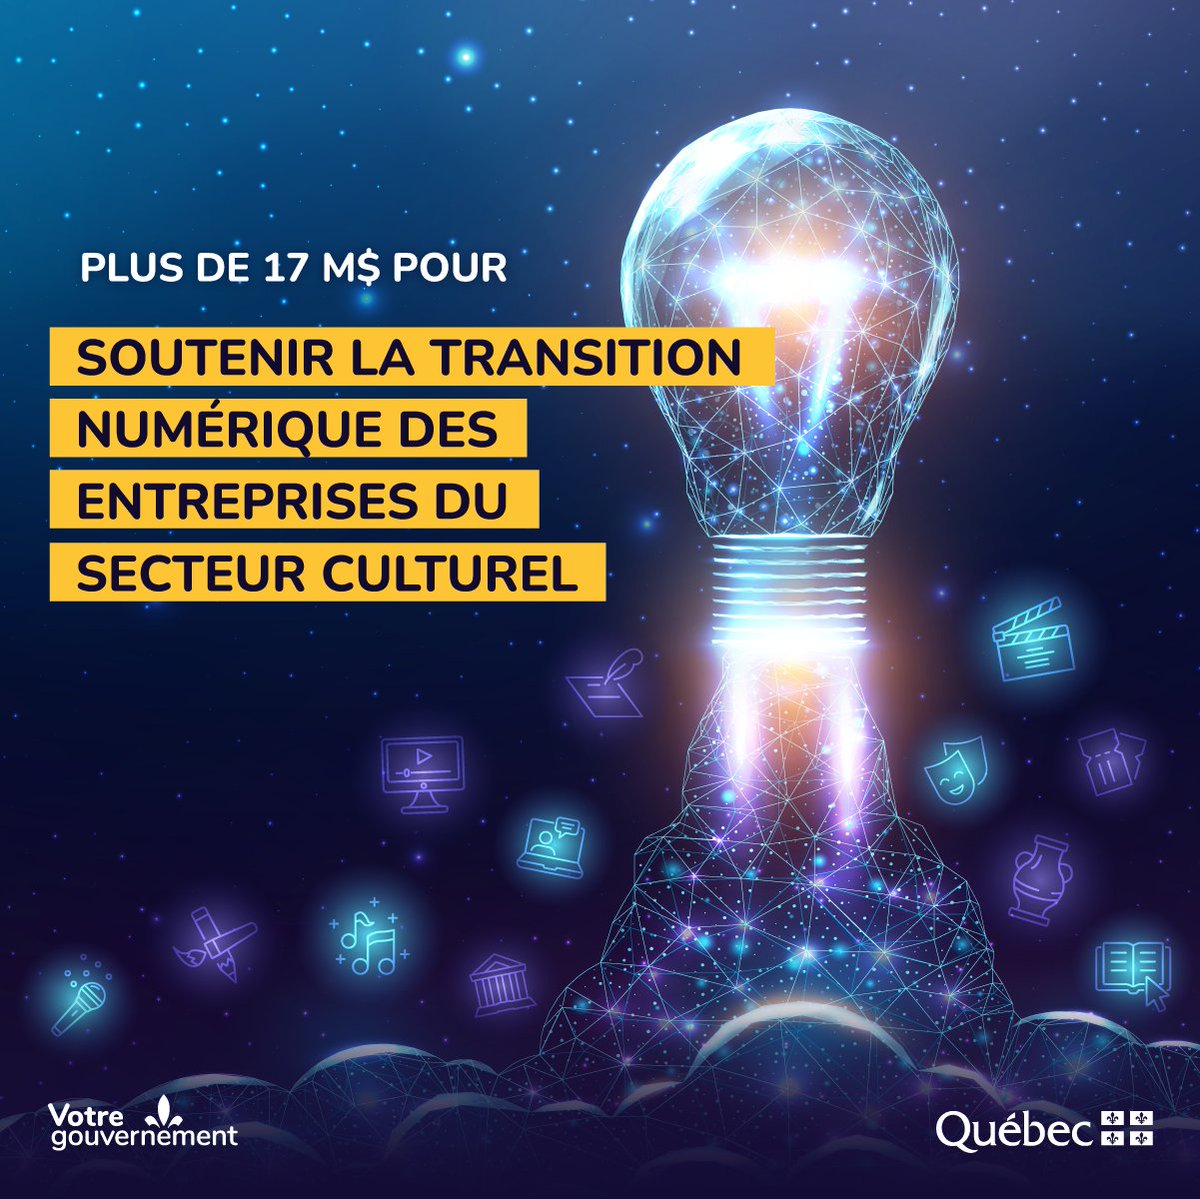 #communiqué
Le @GouvQc octroie plus de 17 M$ pour poursuivre la transition numérique des entreprises du secteur culturel

Détails : bit.ly/3WN7ytY | #CultureQc | #Numérique